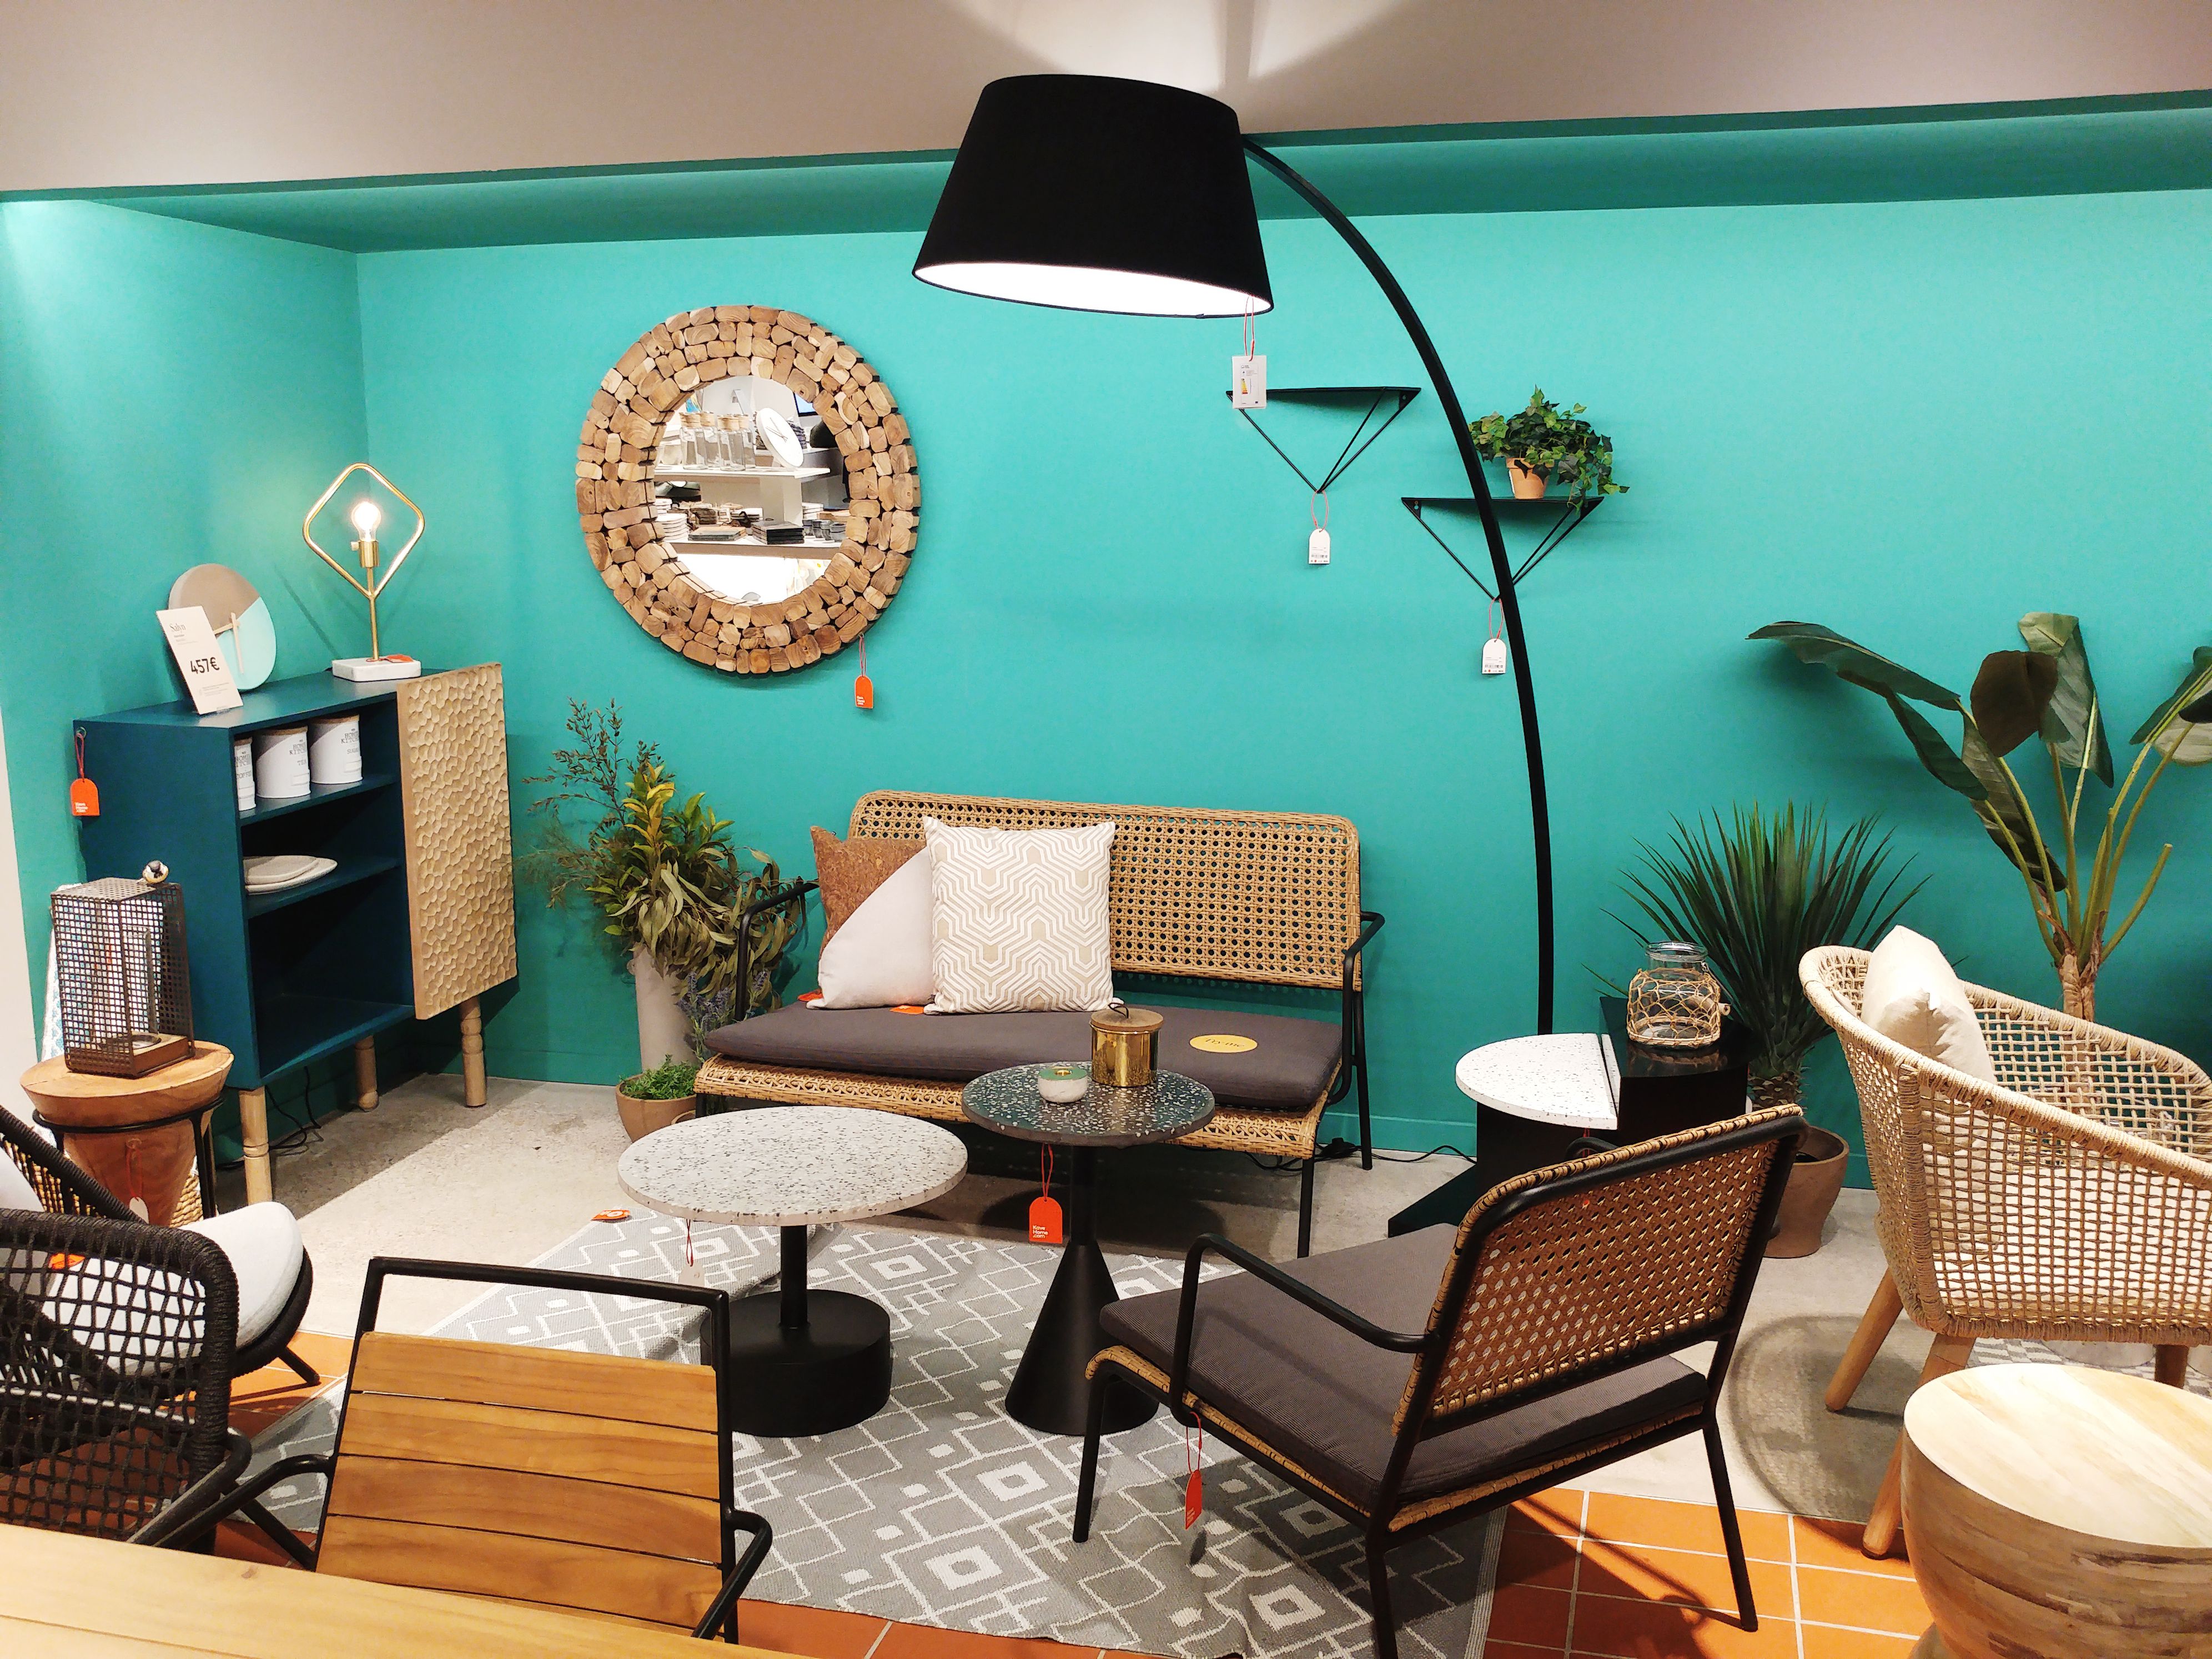 Kave Home furniture shop in Barcelona